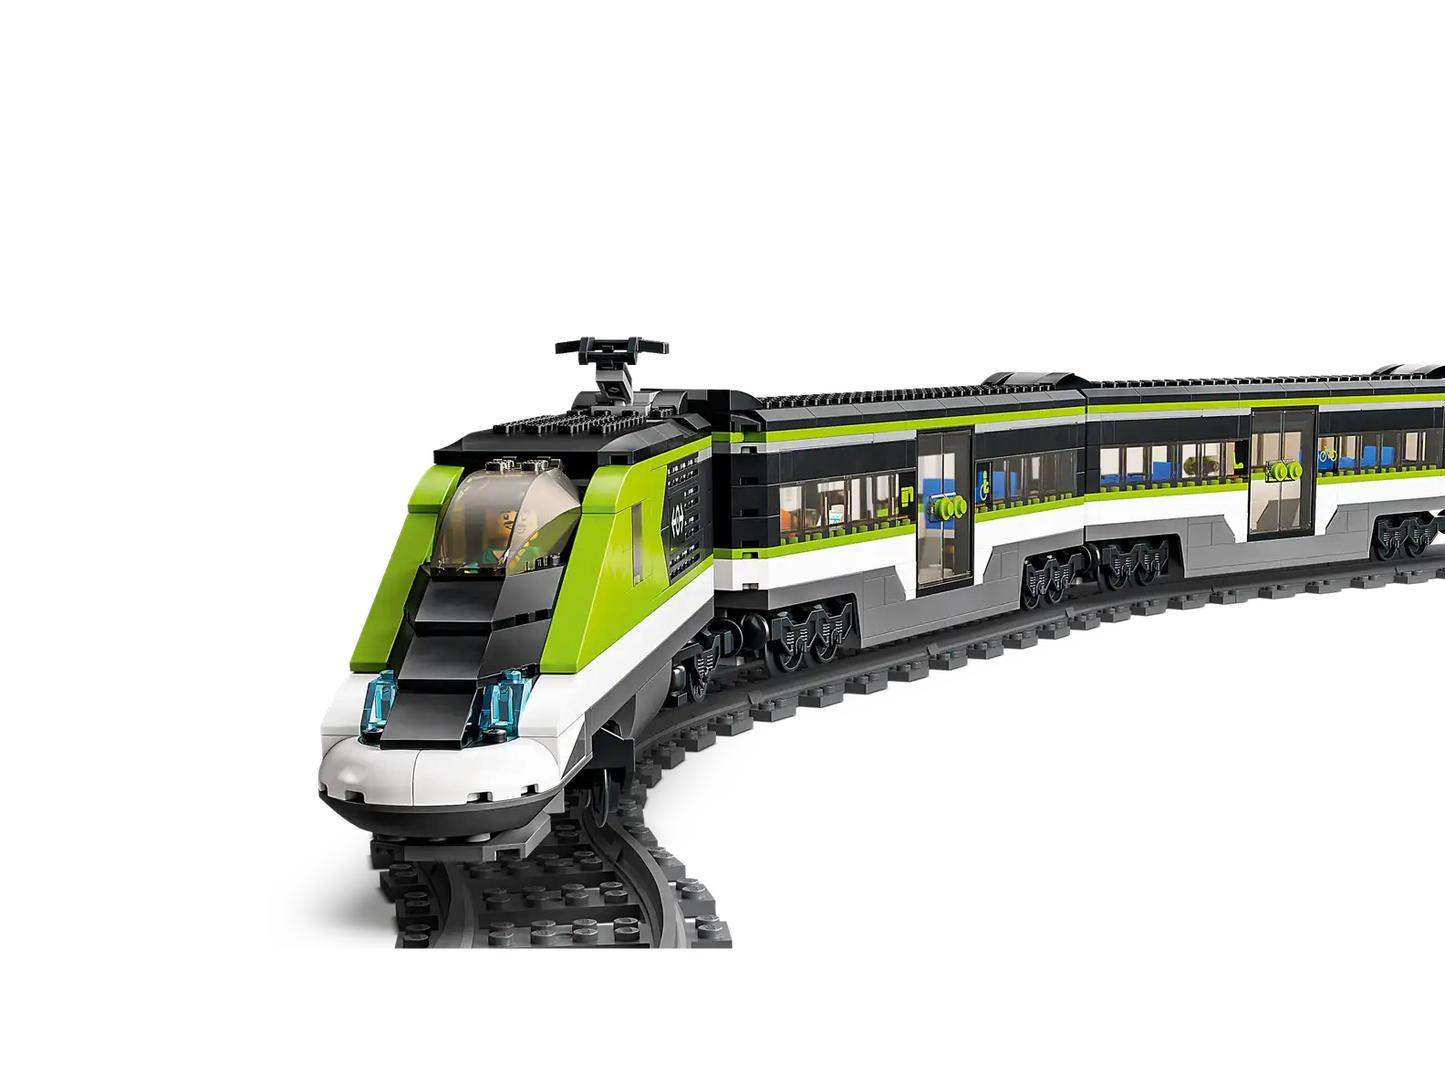 Set Lego City Tren Expreso de Pasajeros